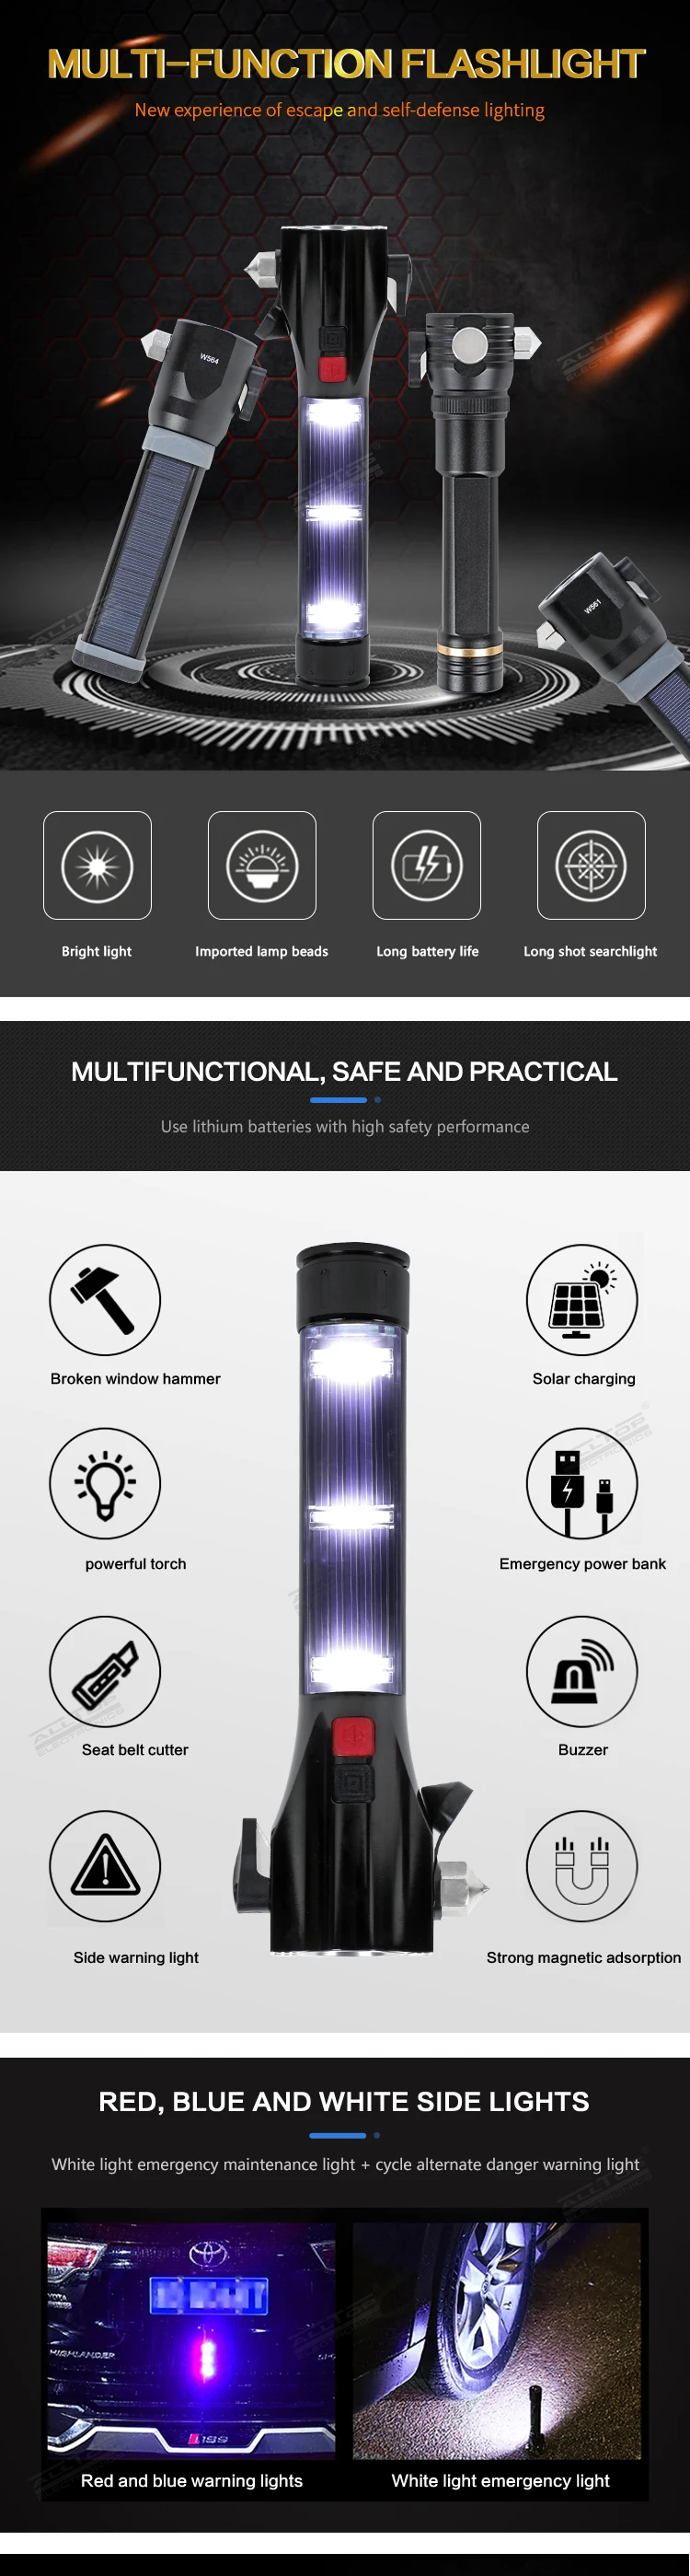 ALLTOP Multipurpose aluminium waterproof camping USB rechargeable solar flashlight